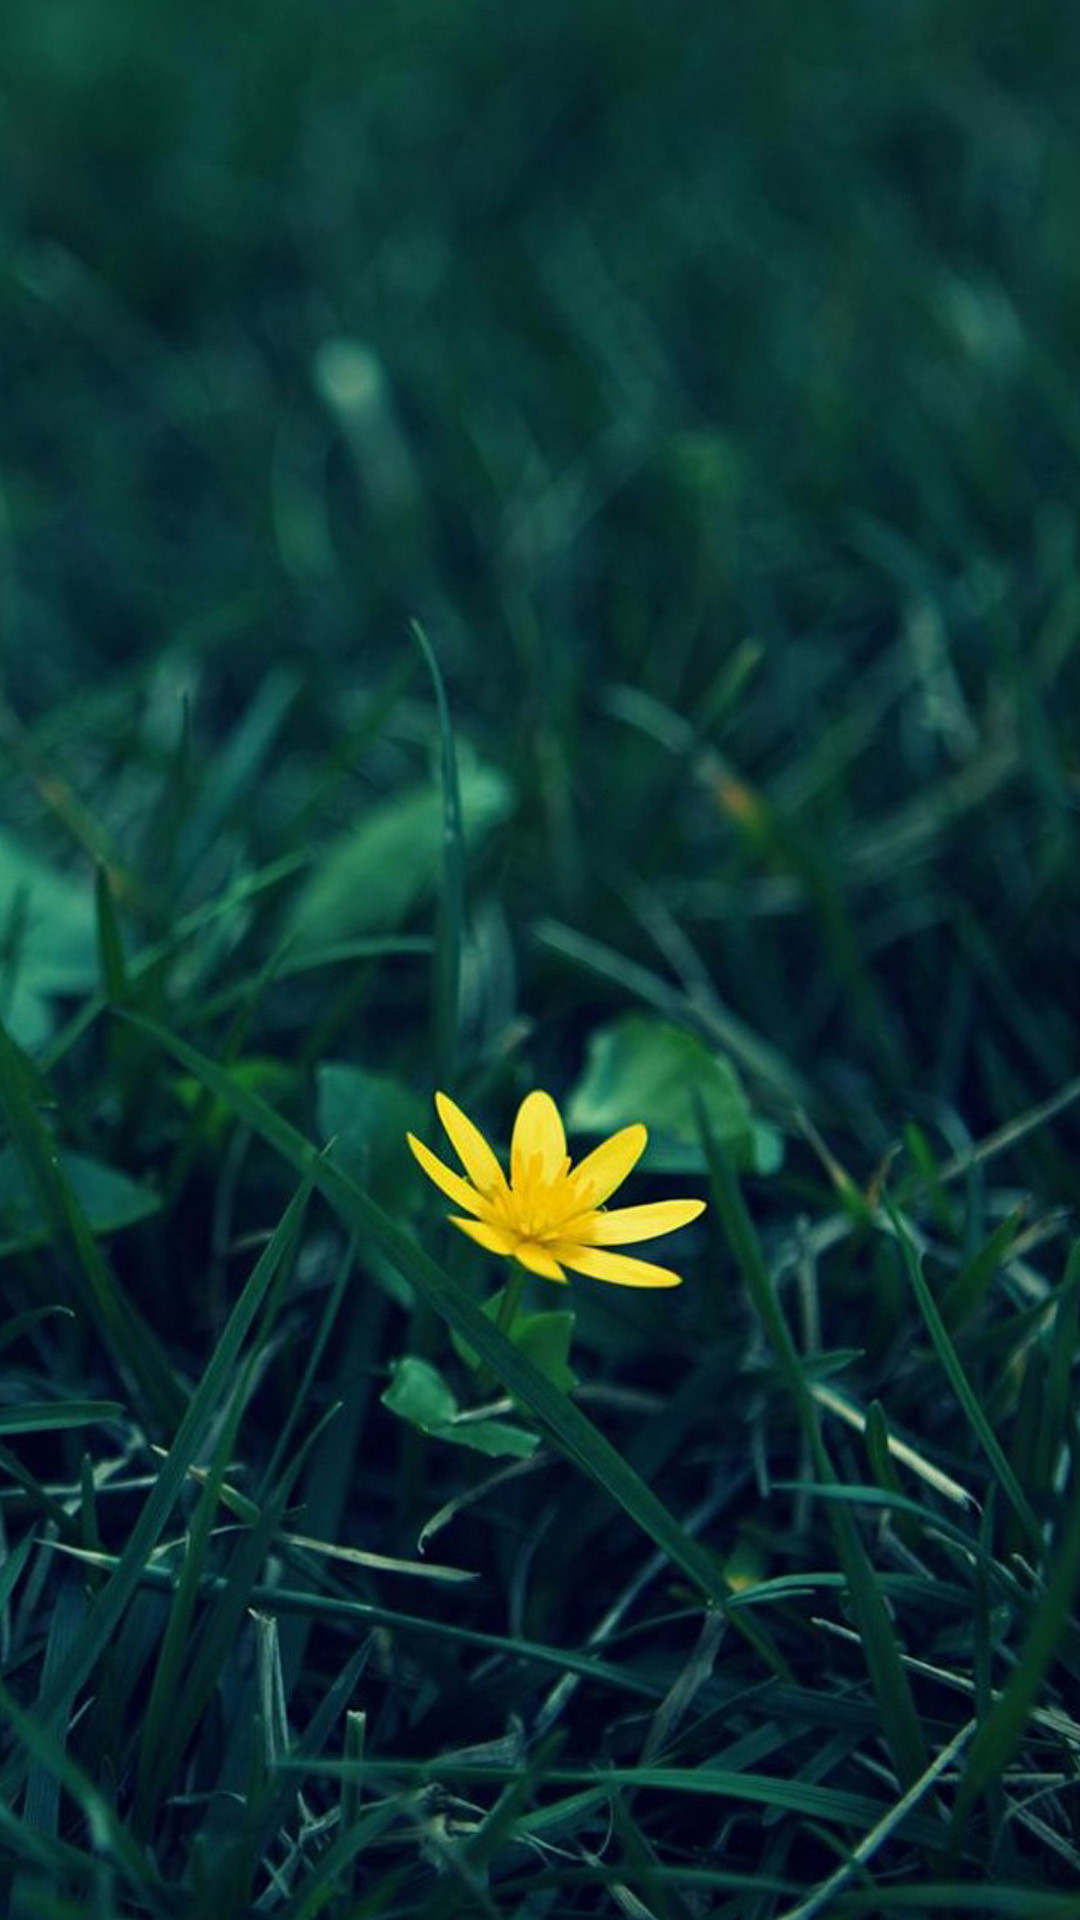 1080x1920 Nature Little Yellow Flower Green Grassland Blur Background iPhone wallpaper